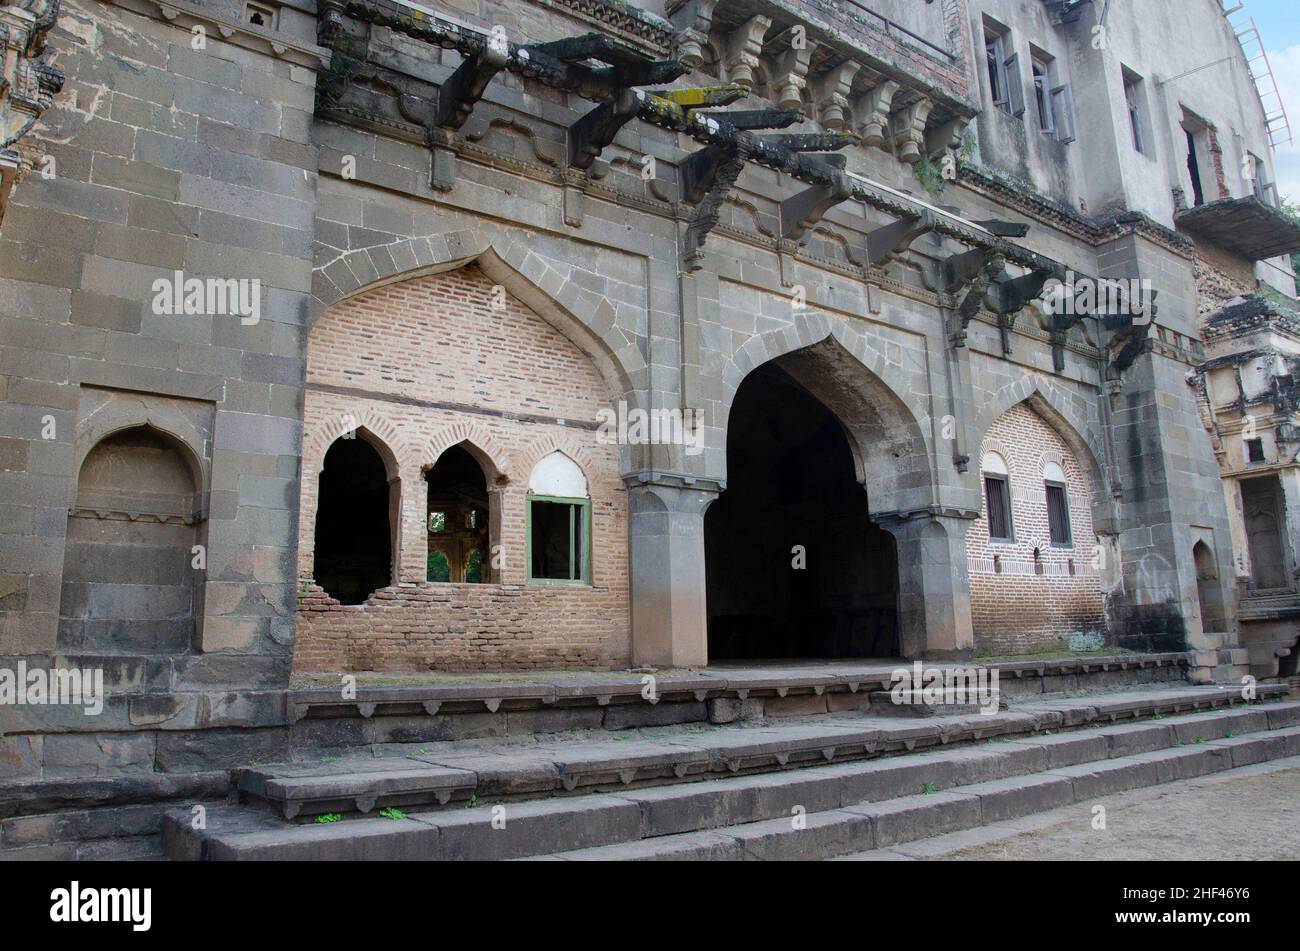 Vue extérieure du Habashi Mahal, également connu sous le nom de Palais Malik Ambar, il a été construit vers 1590, il est situé à Junnar, près de Pune, Maharashtra, Inde Banque D'Images